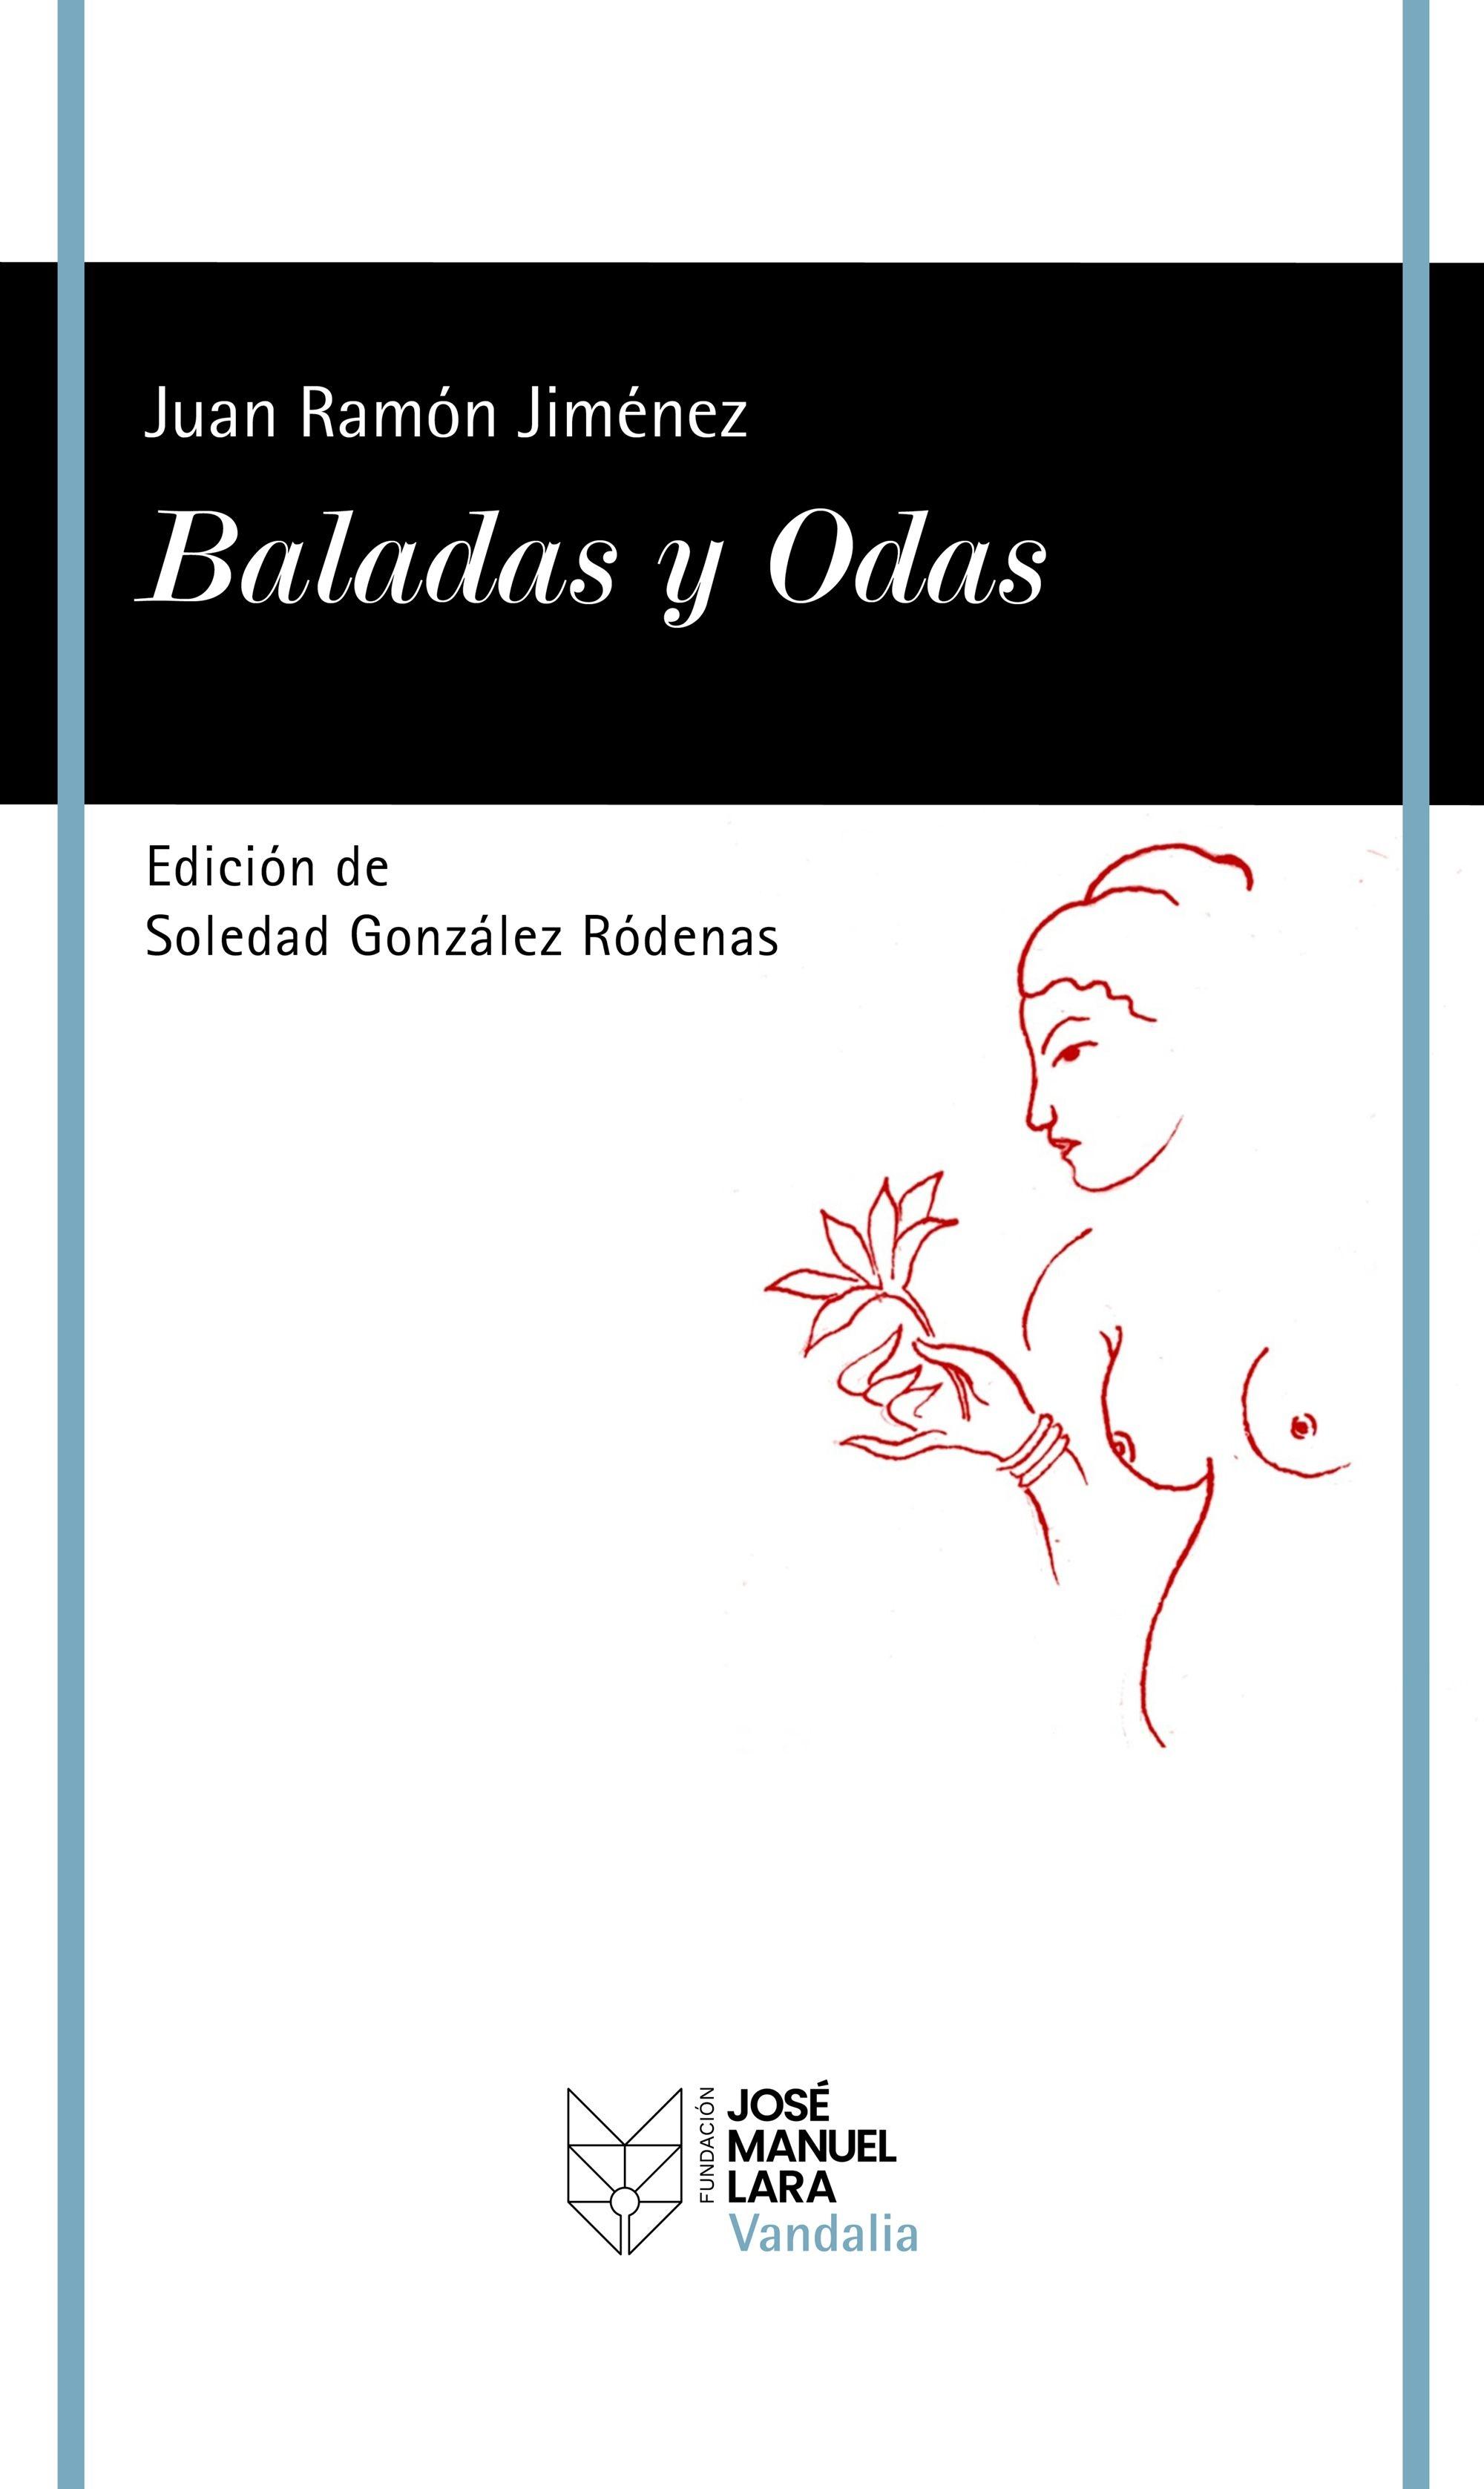 Baladas y Odas "Edición de Soledad González Ródenas"